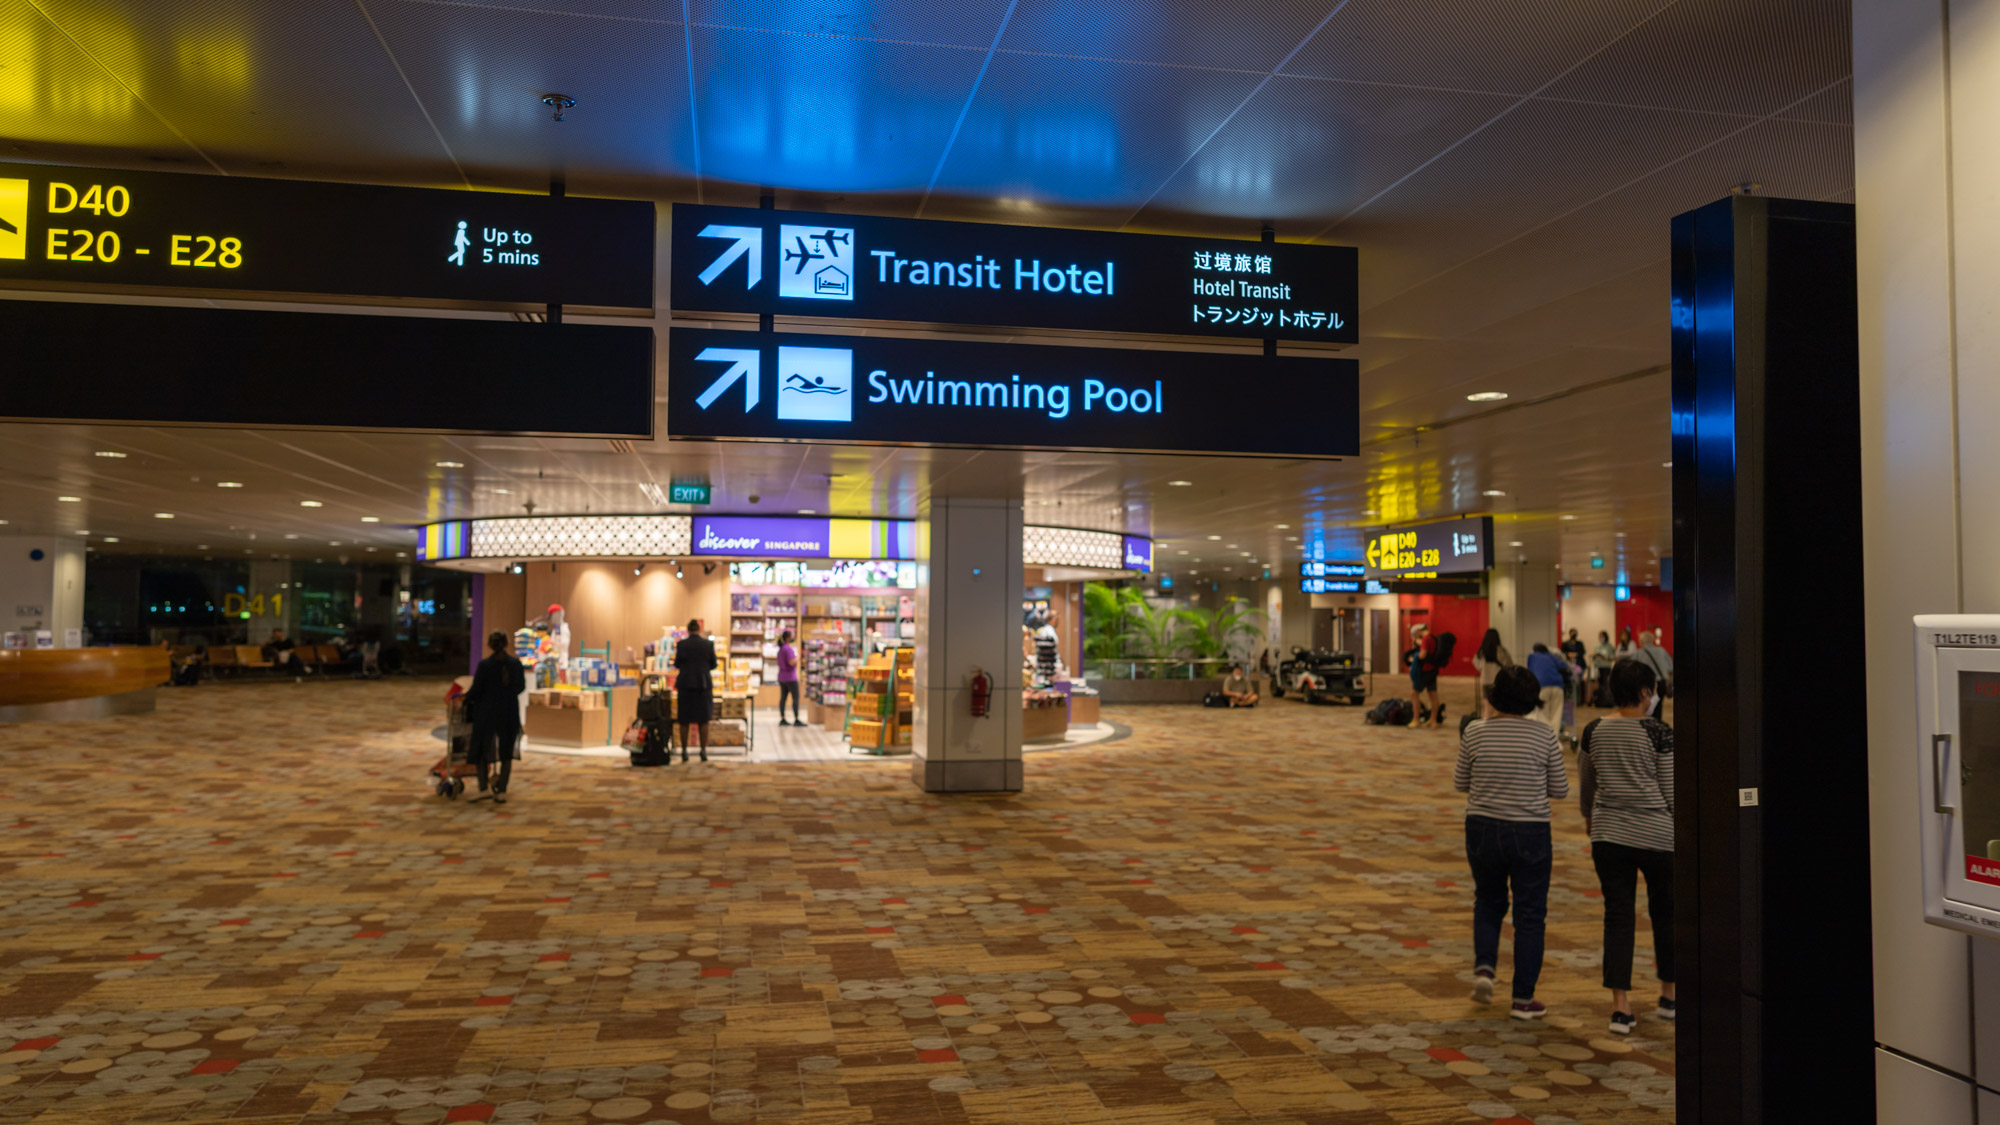 Changi Airport transit hotel sign